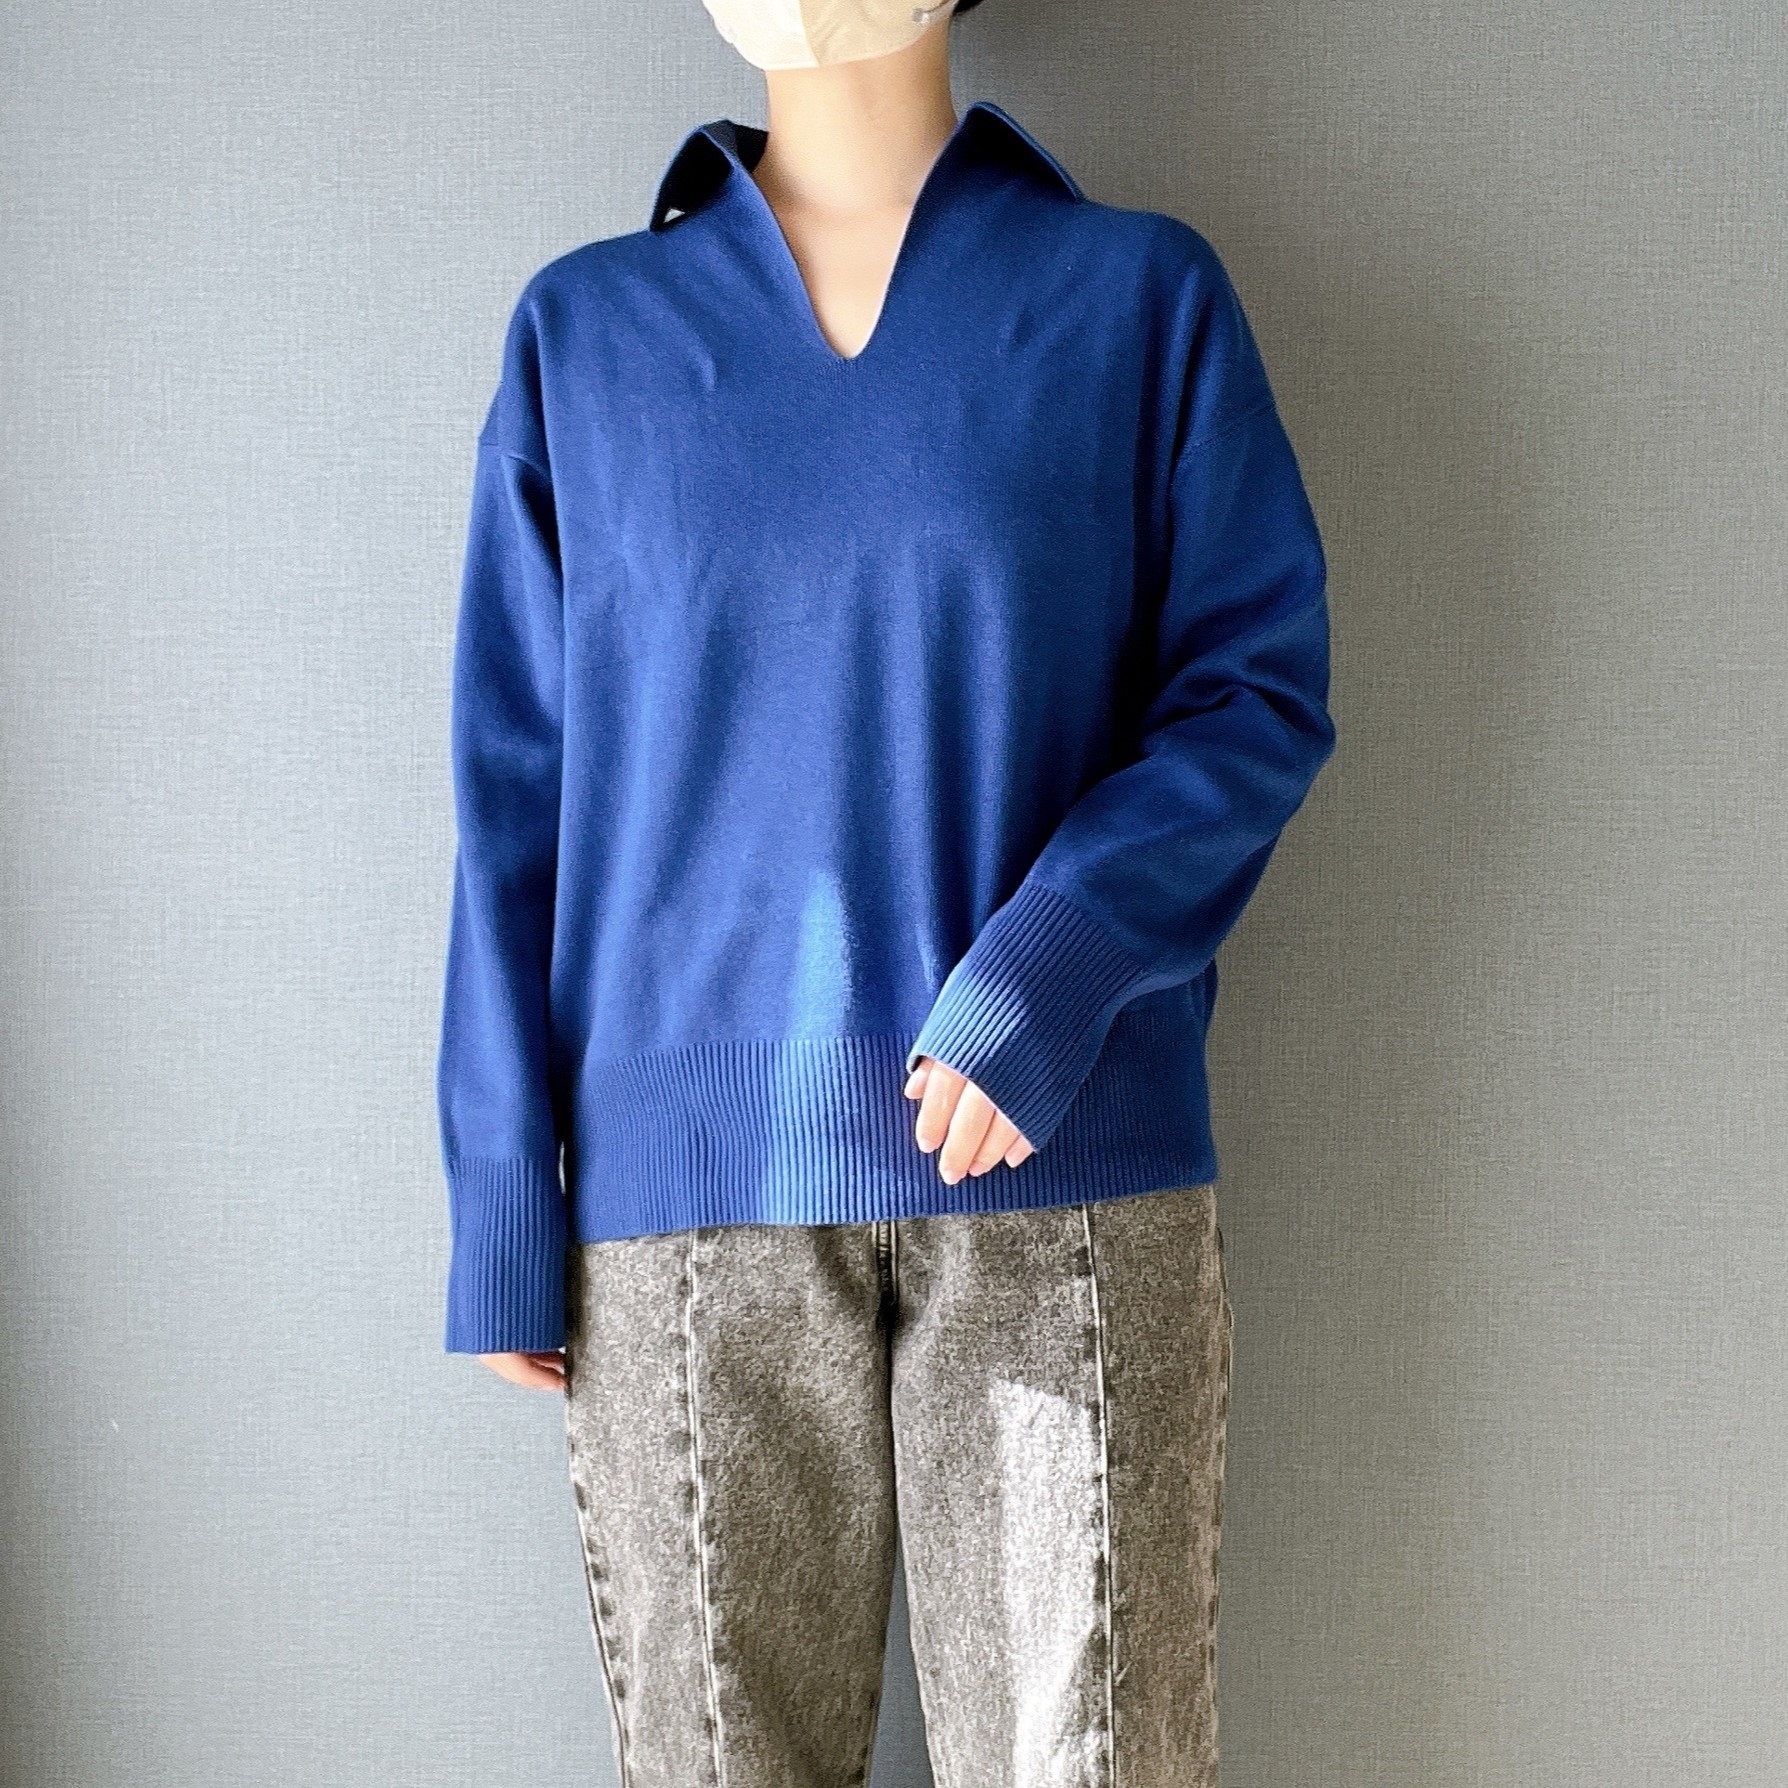 無印良品のオススメのセーター「婦人 洗えるミラノリブ編みスキッパーポロセーター」